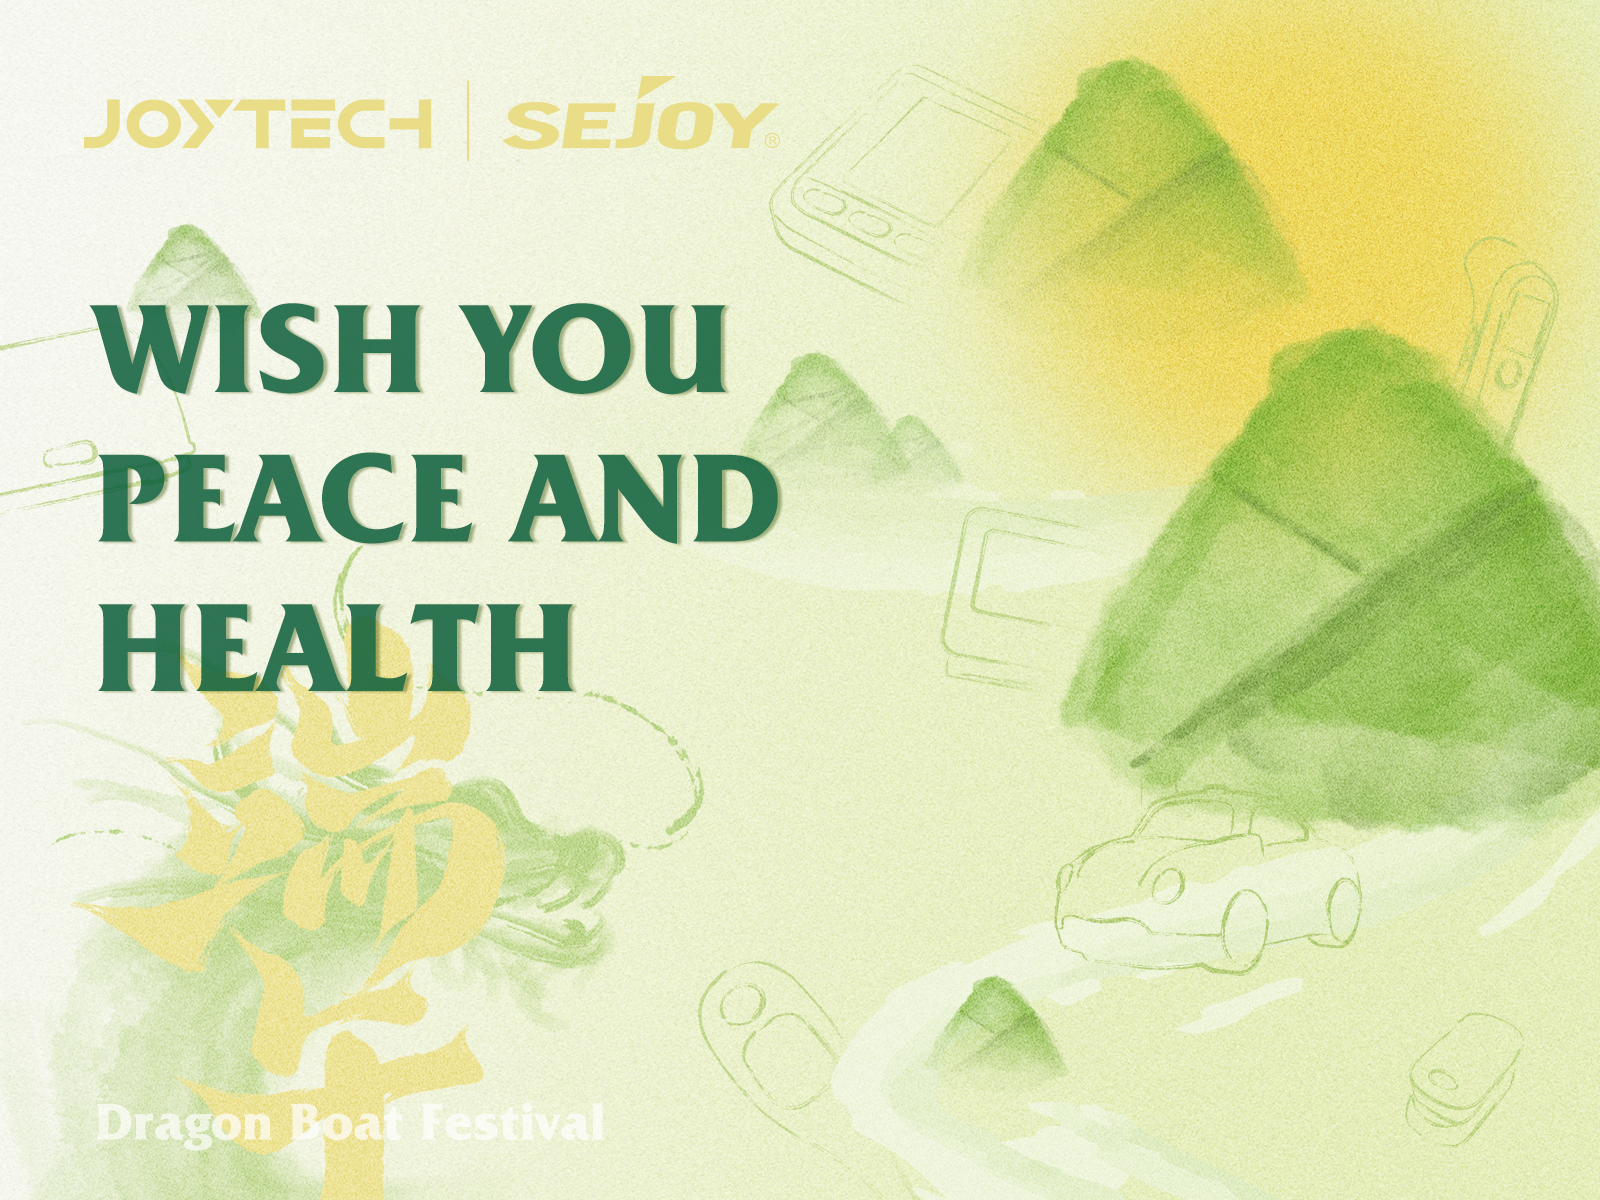 Η Joytech ανακοινώνει 3ήμερες διακοπές για το Dragon Boat Festival